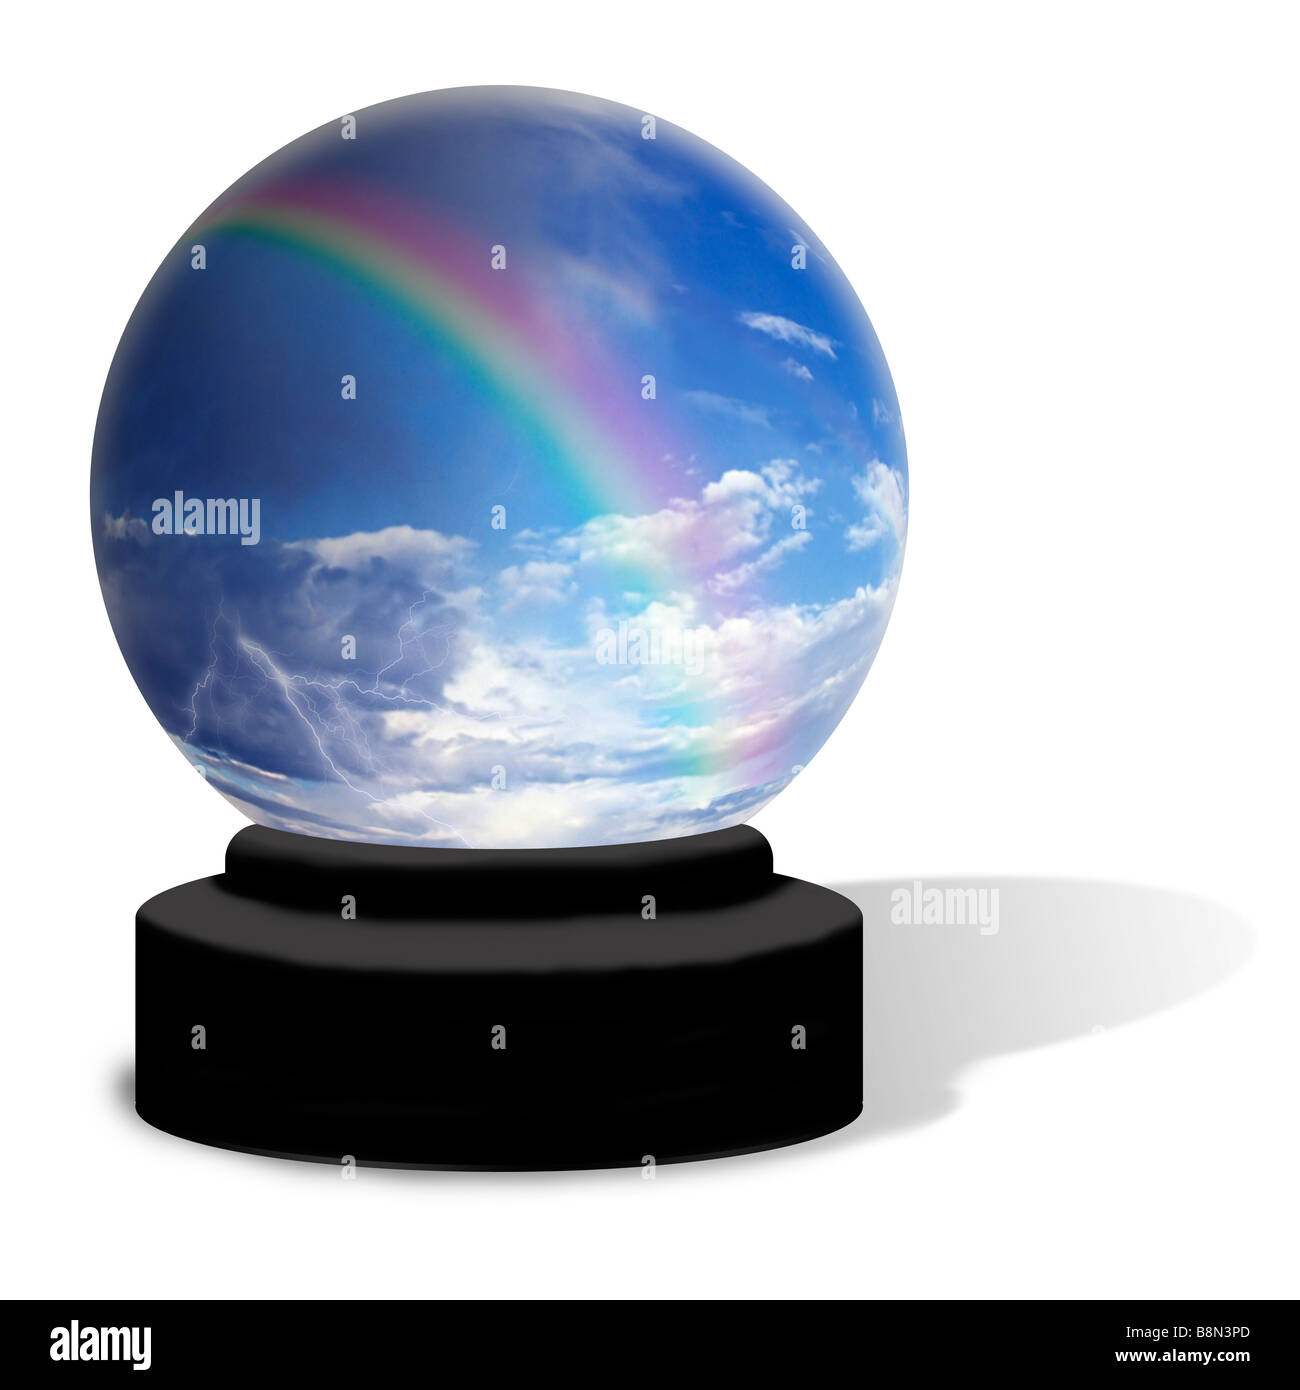 Una sfera di cristallo su uno sfondo bianco il mondo contiene un imbiancamento sky con un arcobaleno che appaiono sopra le nuvole di tuono Foto Stock